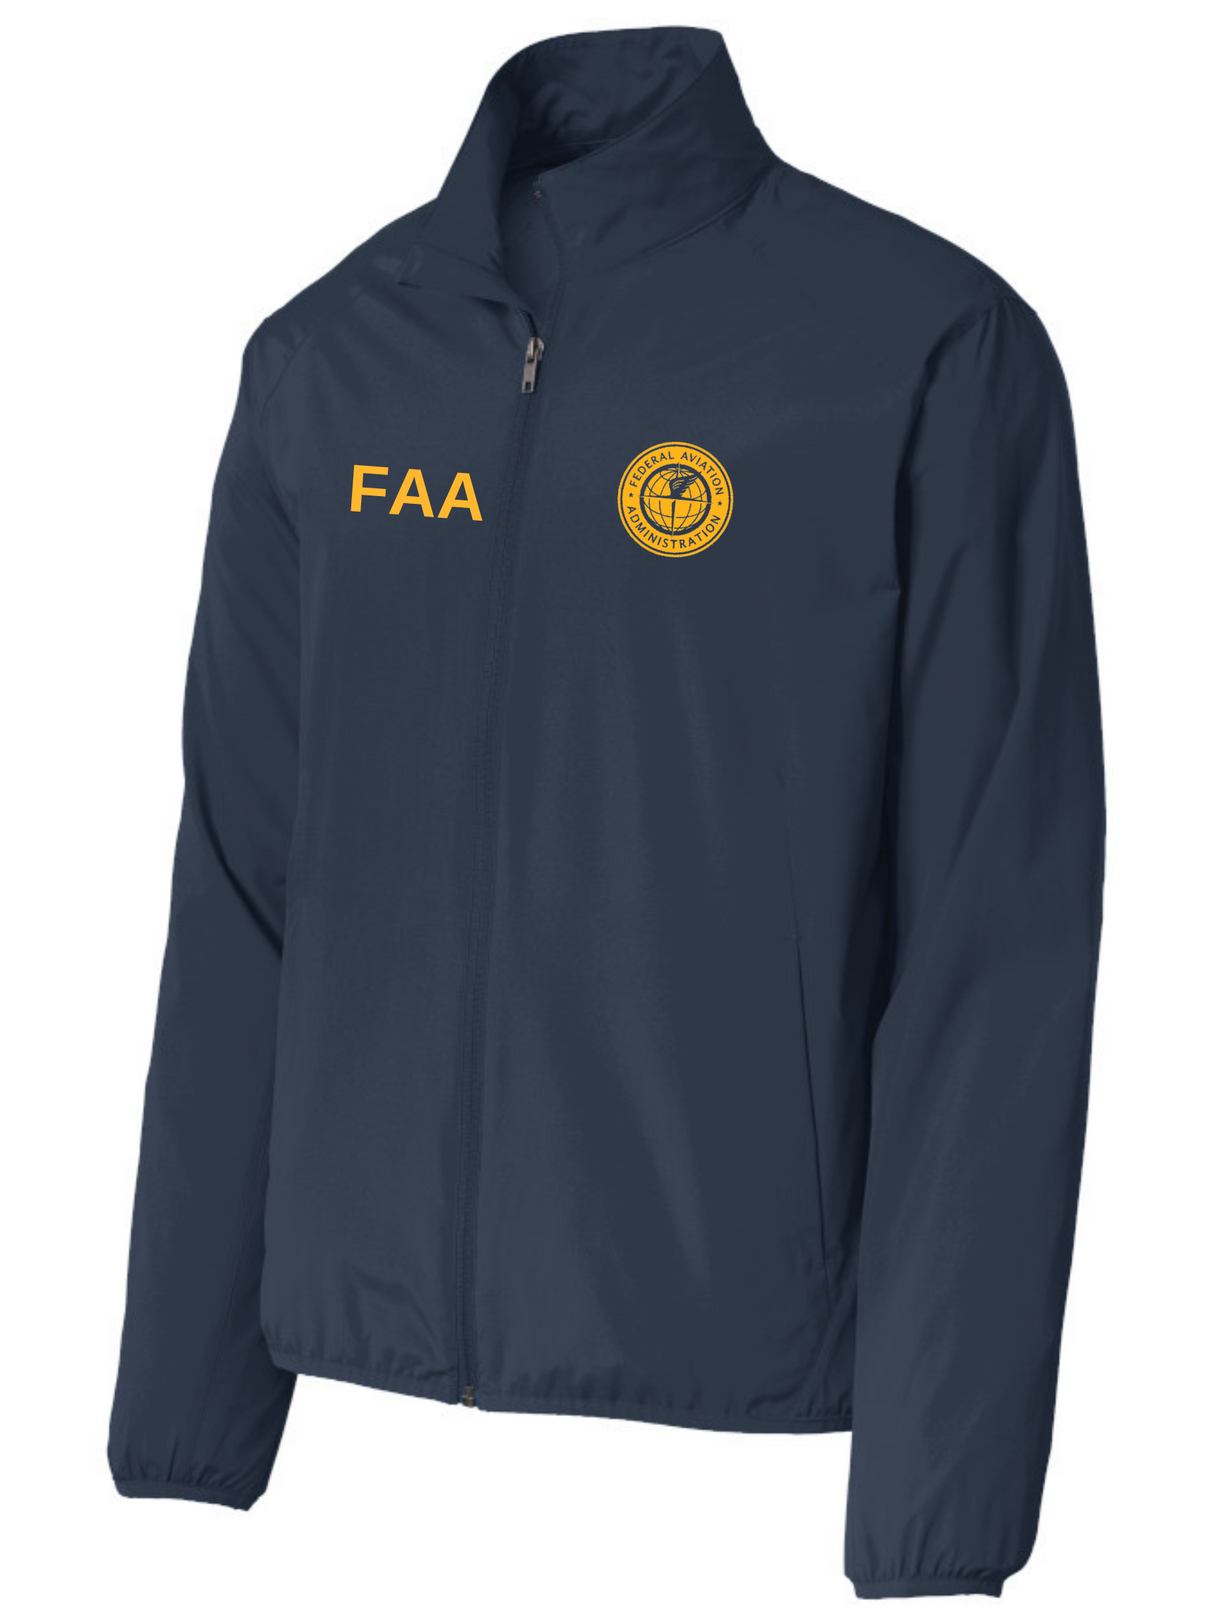 FAA Agency Identifier Jacket - FEDS Apparel